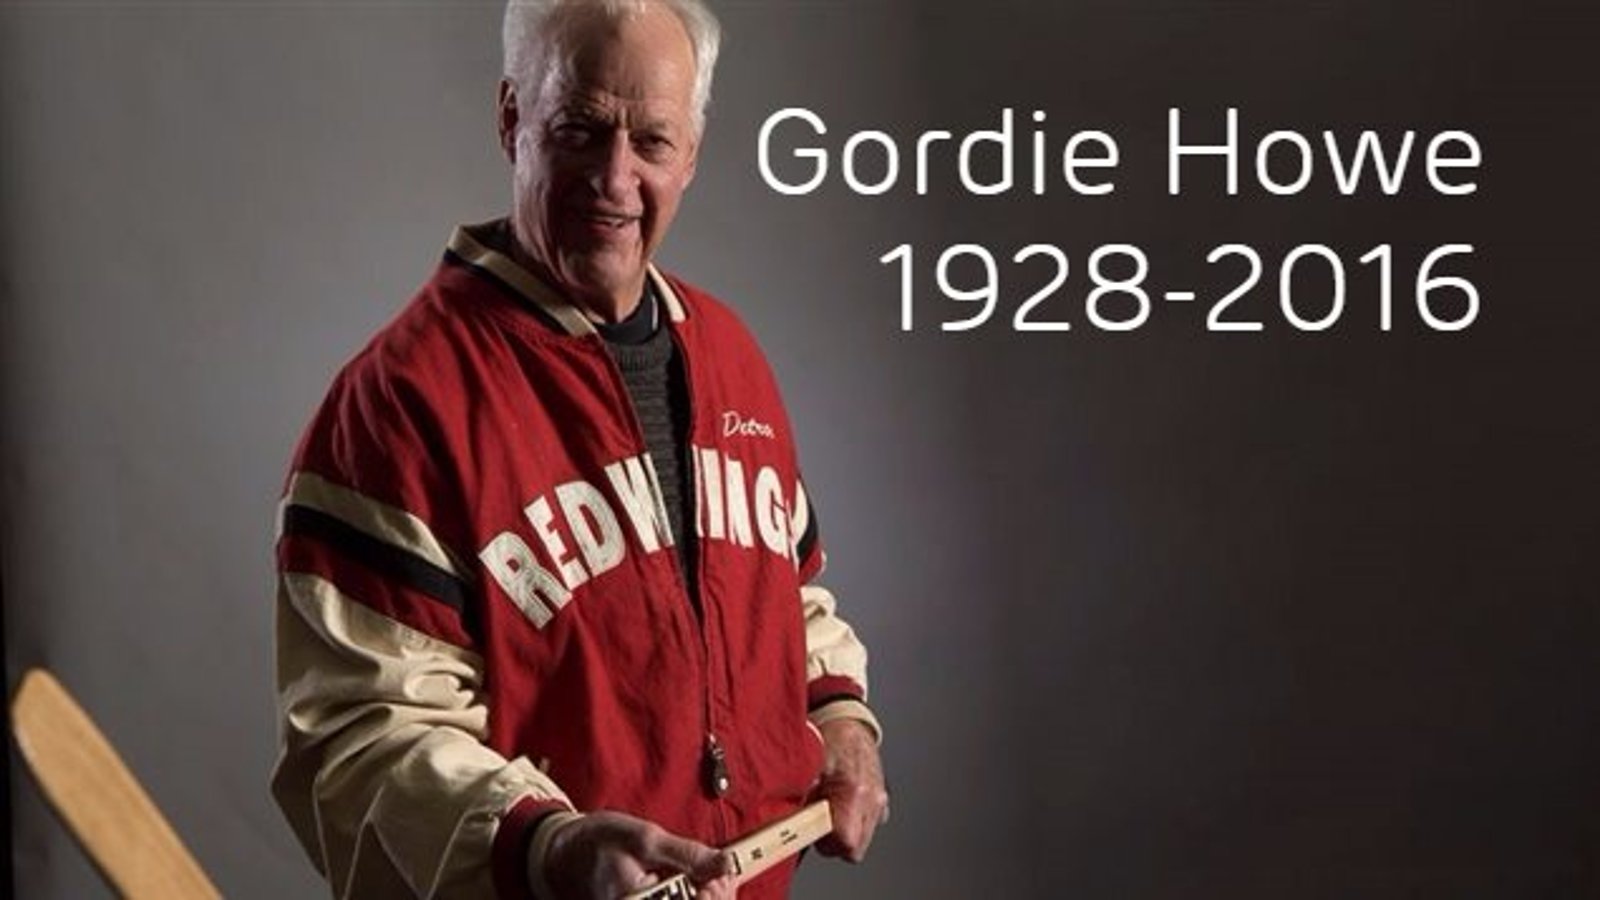 Tribute to Gordie Howe